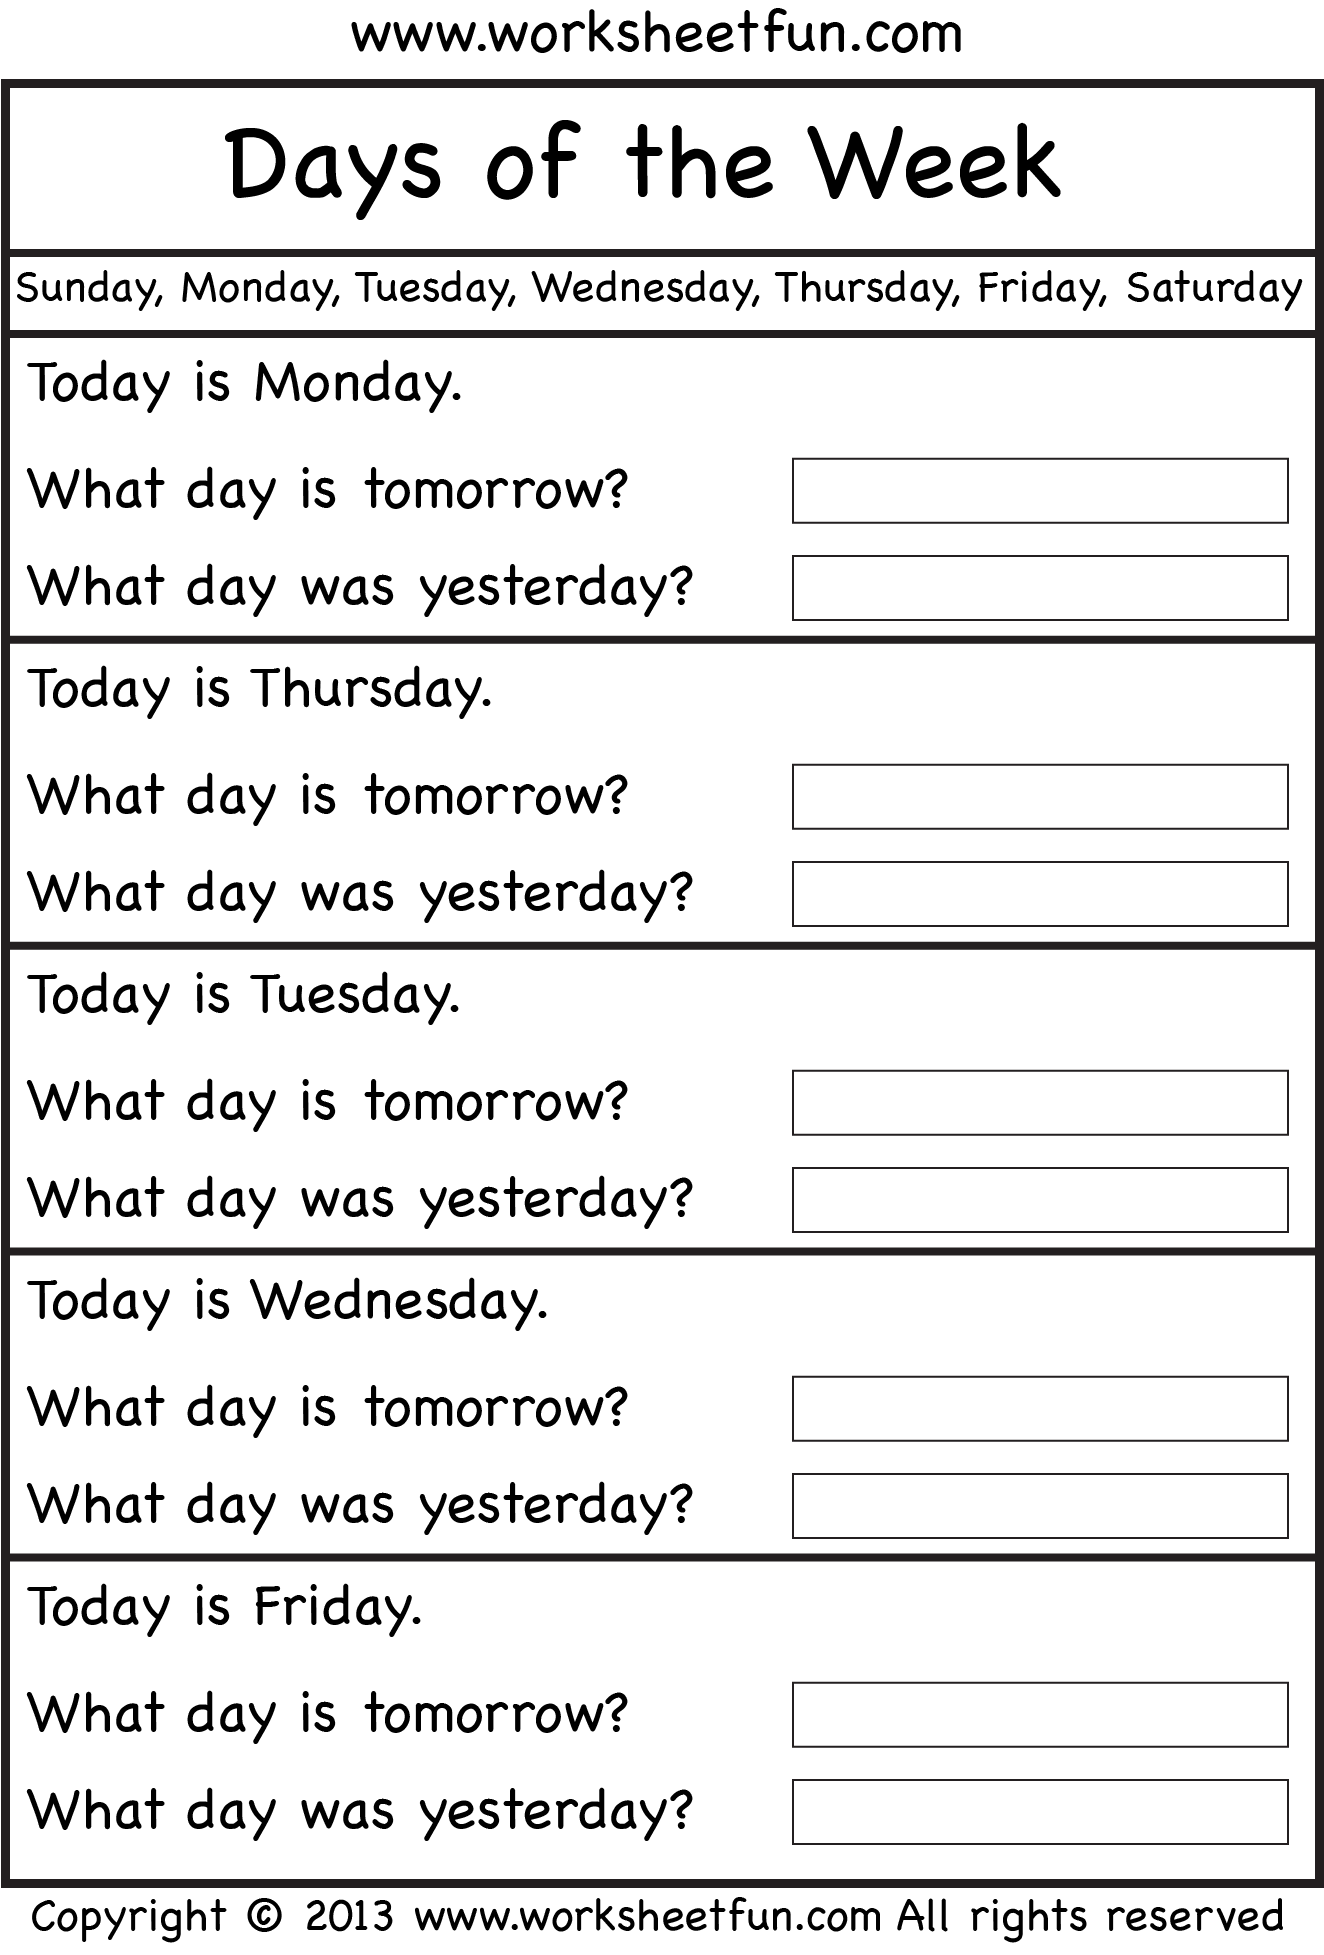 Days of the Week – Worksheet / FREE Printable Worksheets – Worksheetfun